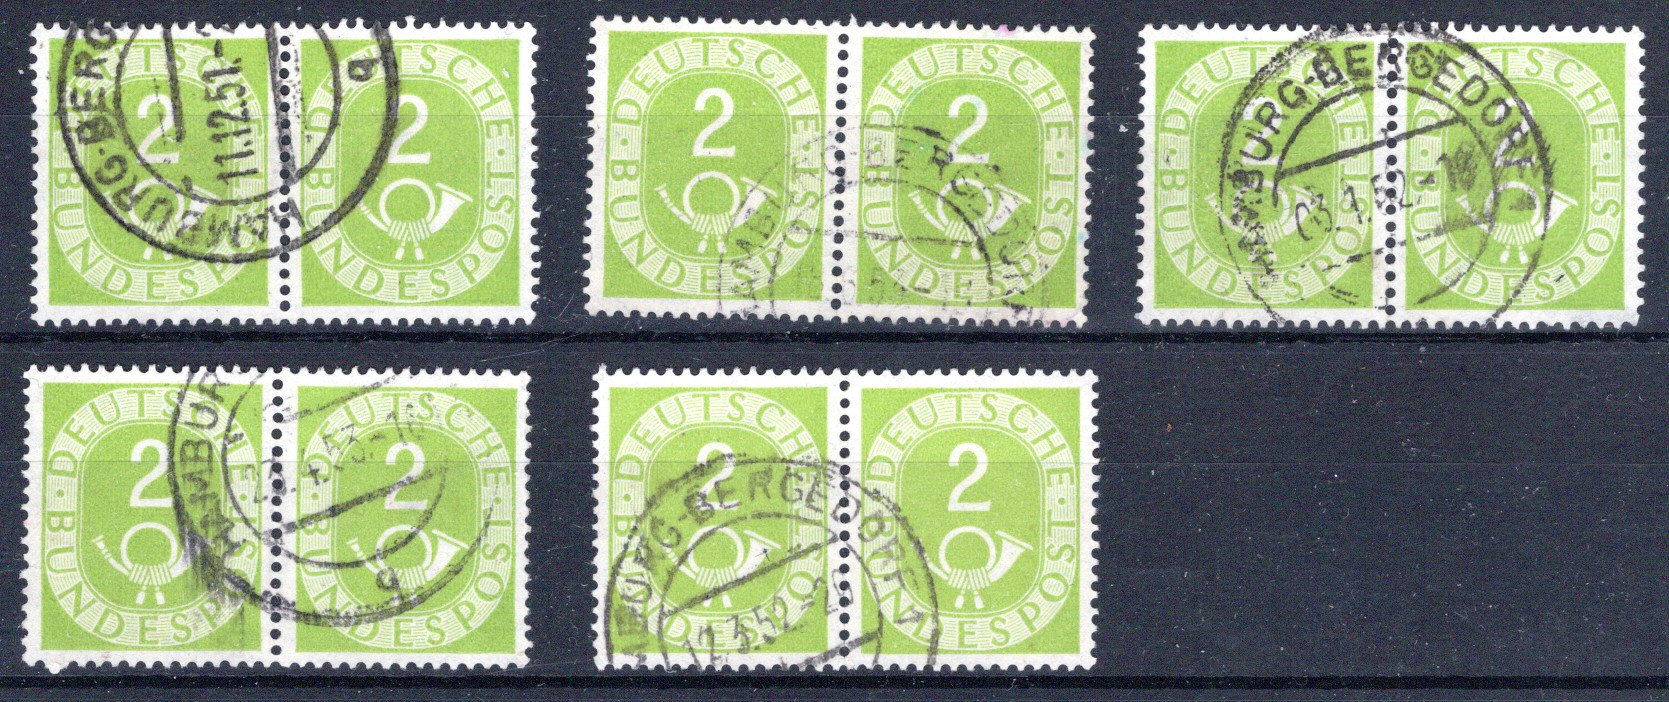 Lot 915 - British Commonwealth British Post Offices in Heraklion -  Georg Bühler Briefmarken Auktionen GmbH Georg Bühler 336 auction